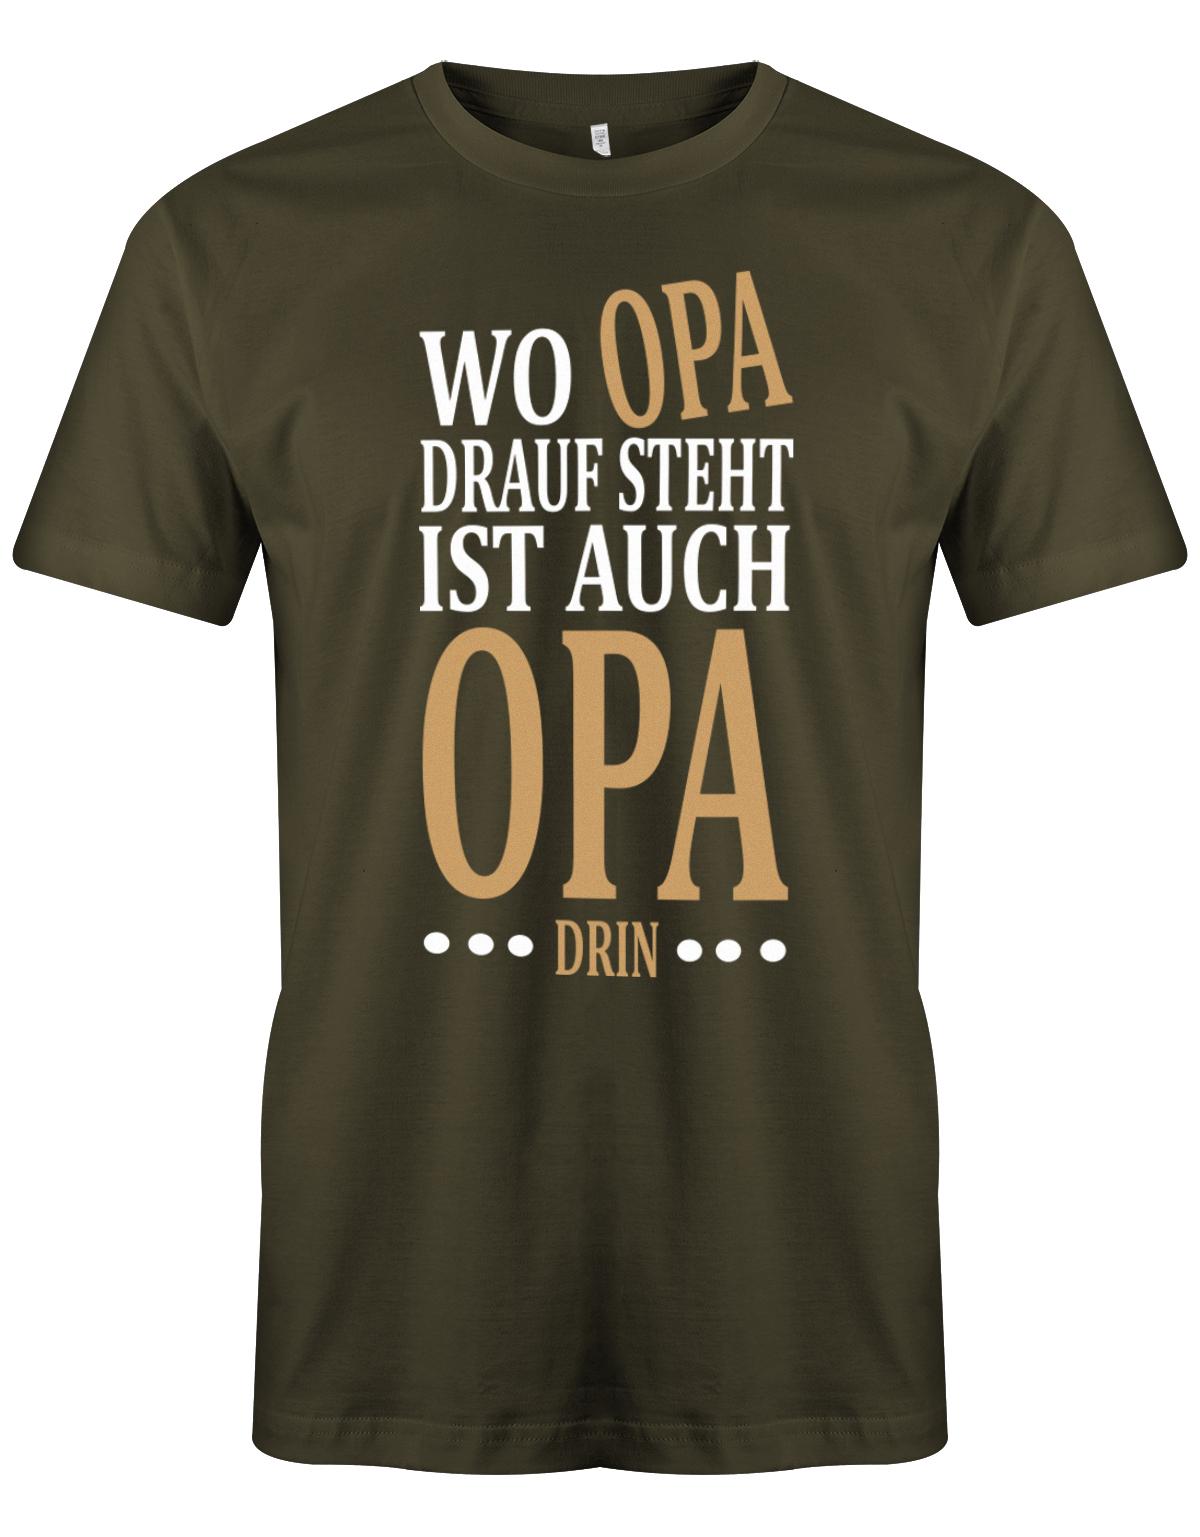 Opa T-Shirt Spruch für den werdenden Opa. Wo Opa drauf steht ist auch Opa drin. Army